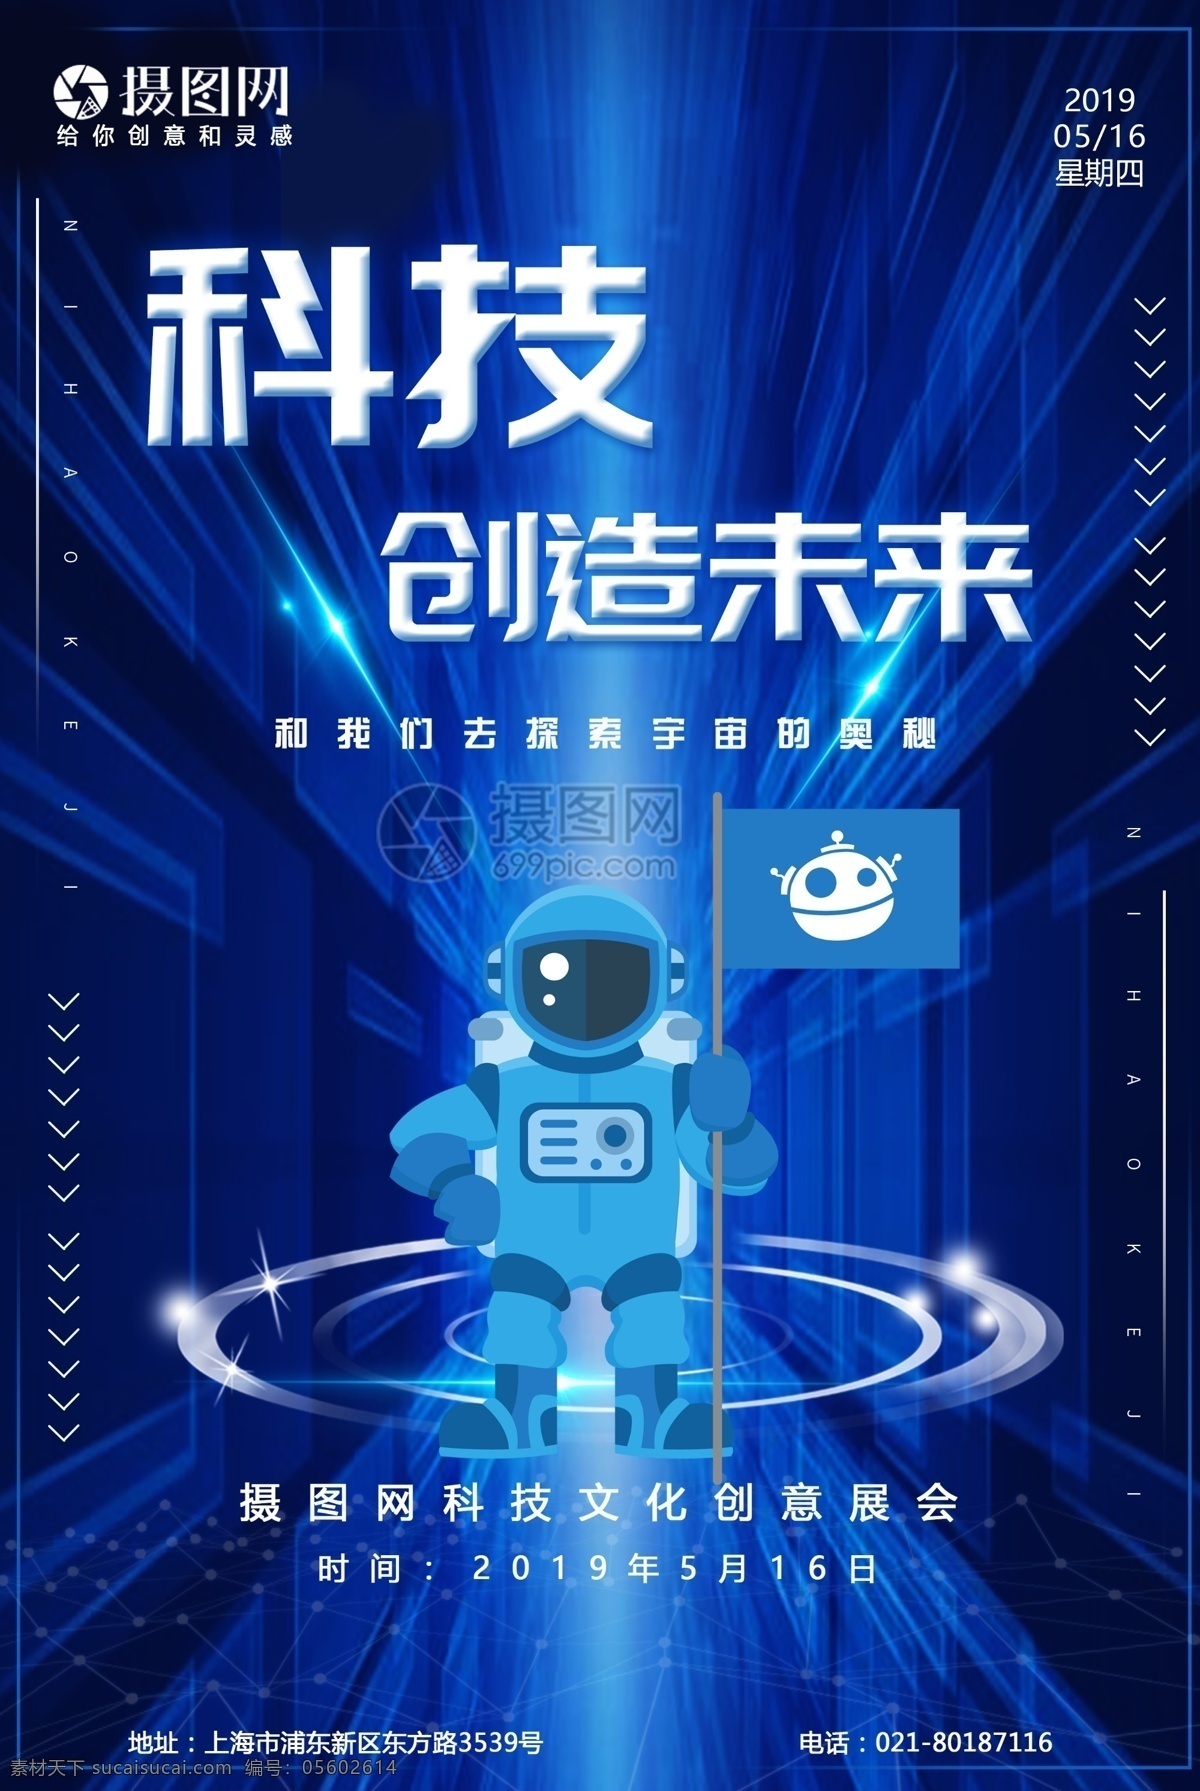 蓝色 科技 创造 未来 海报 高科技 技术 机器人 科技创造未来